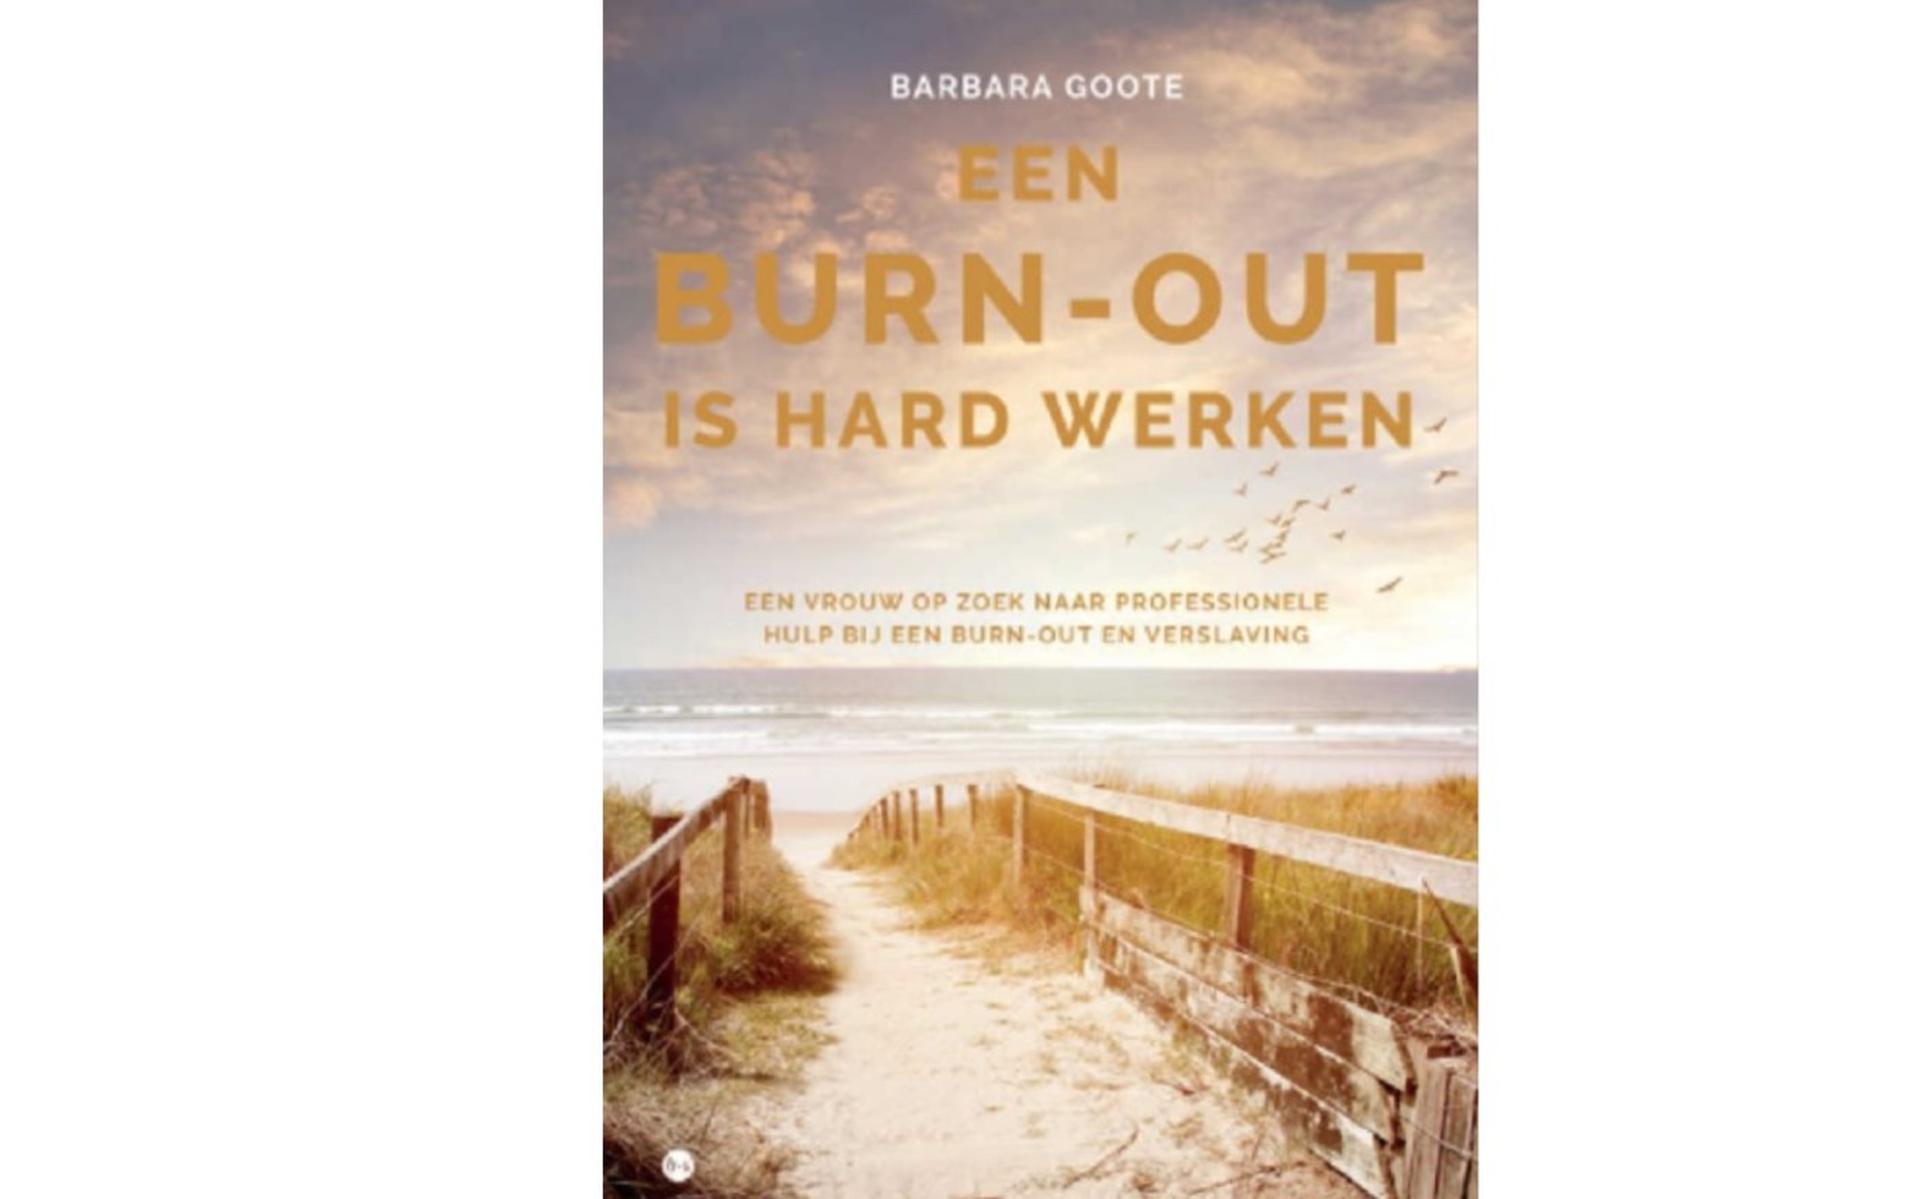 Cover van het boek 'Een burn-out is hard werken' van Barbara Goote.